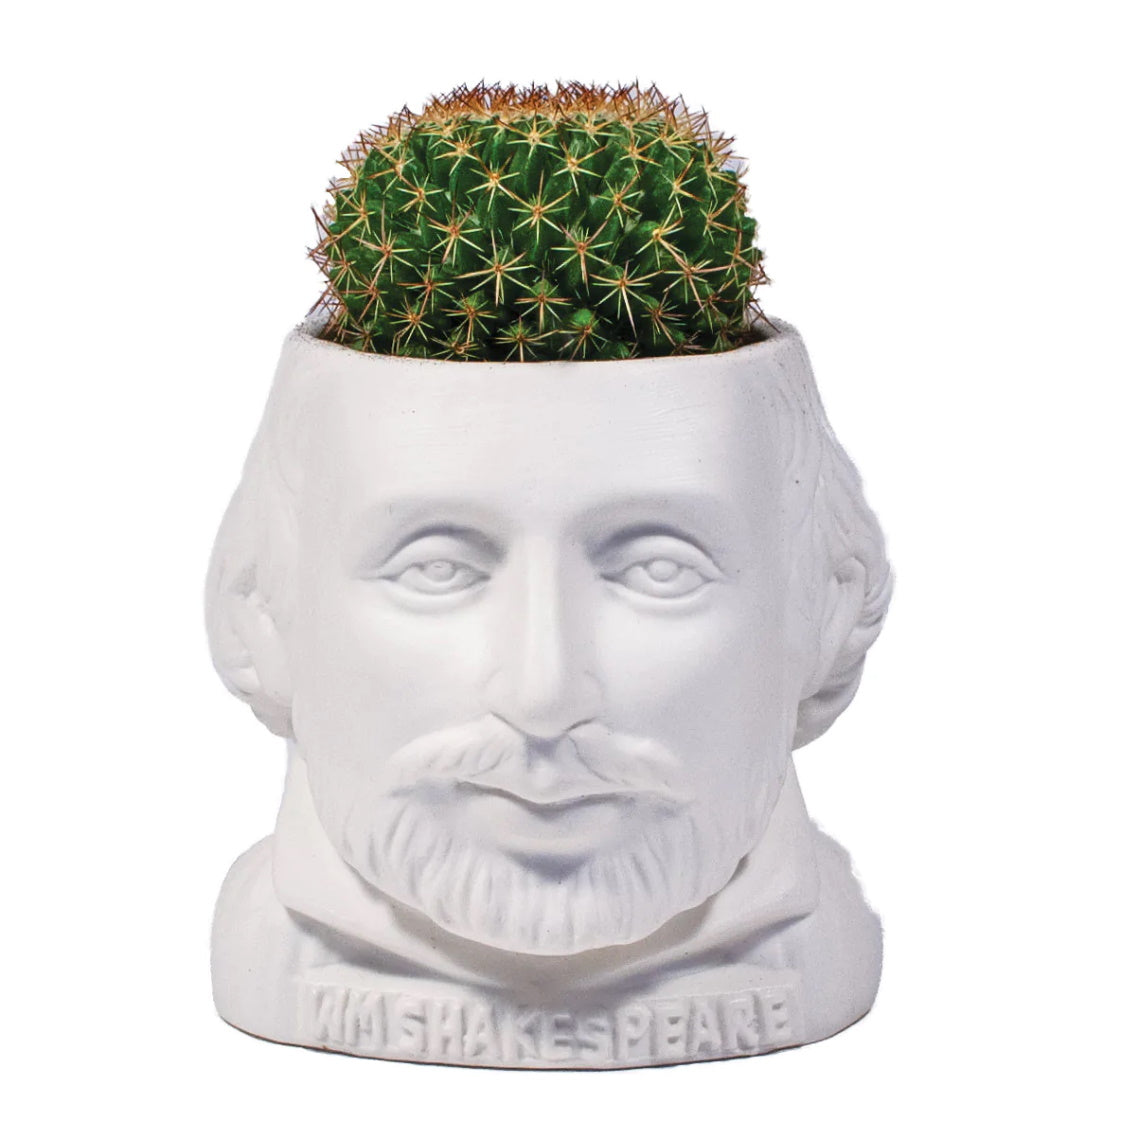 William Shakespeare Small Ceramic Planter